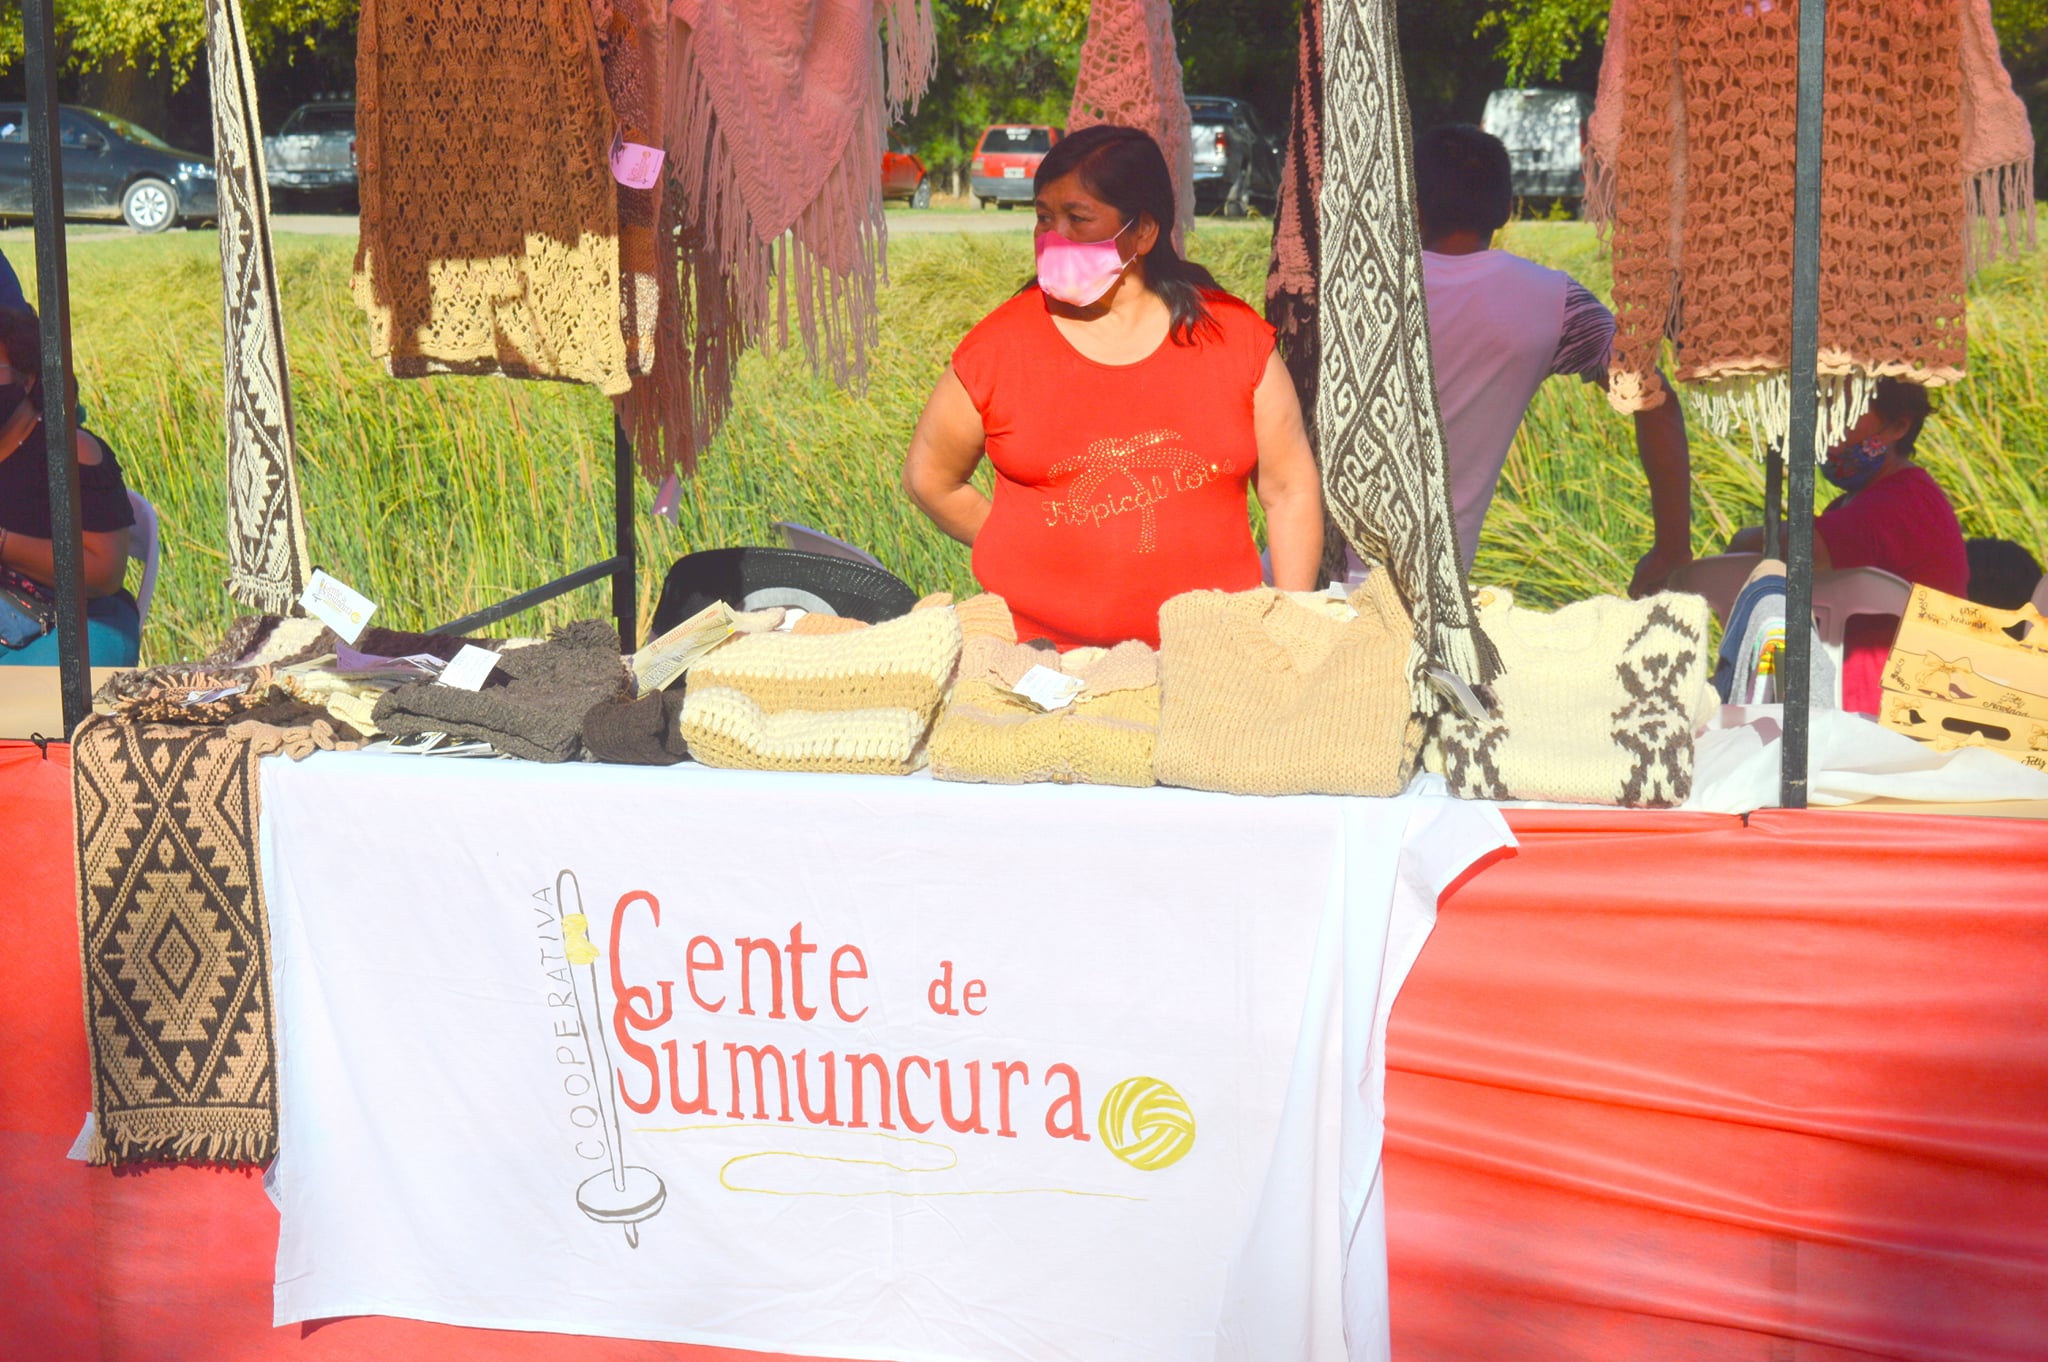 Las artesanas de Gente de Somuncura expusieron sus productos. Foto: Gentileza FM Única Valcheta.